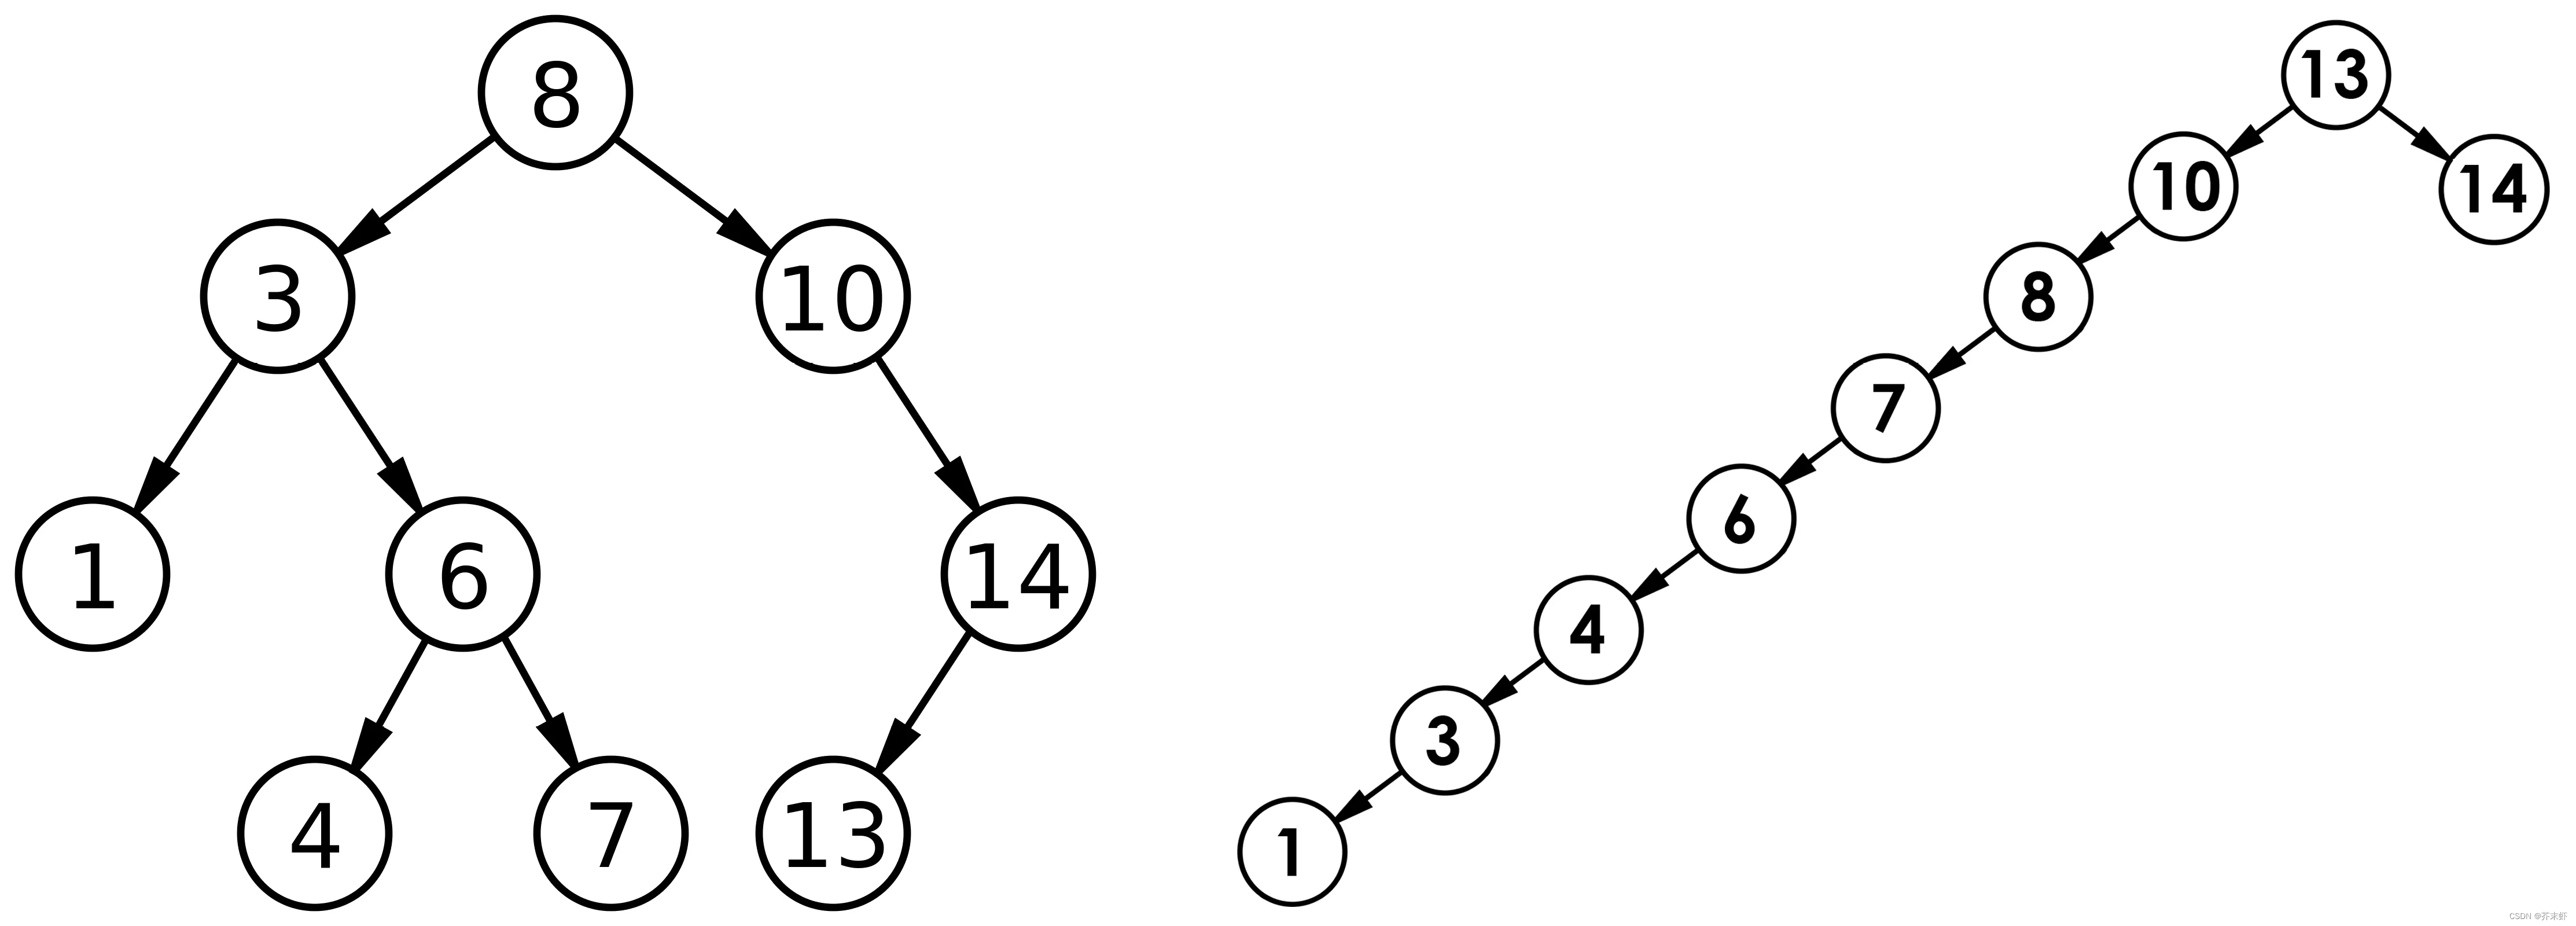 【高阶数据结构】二叉树搜索树 {概念；实现：核心结构，增删查，默认成员函数；应用：K模型和KV模型；性能分析；相关练习}